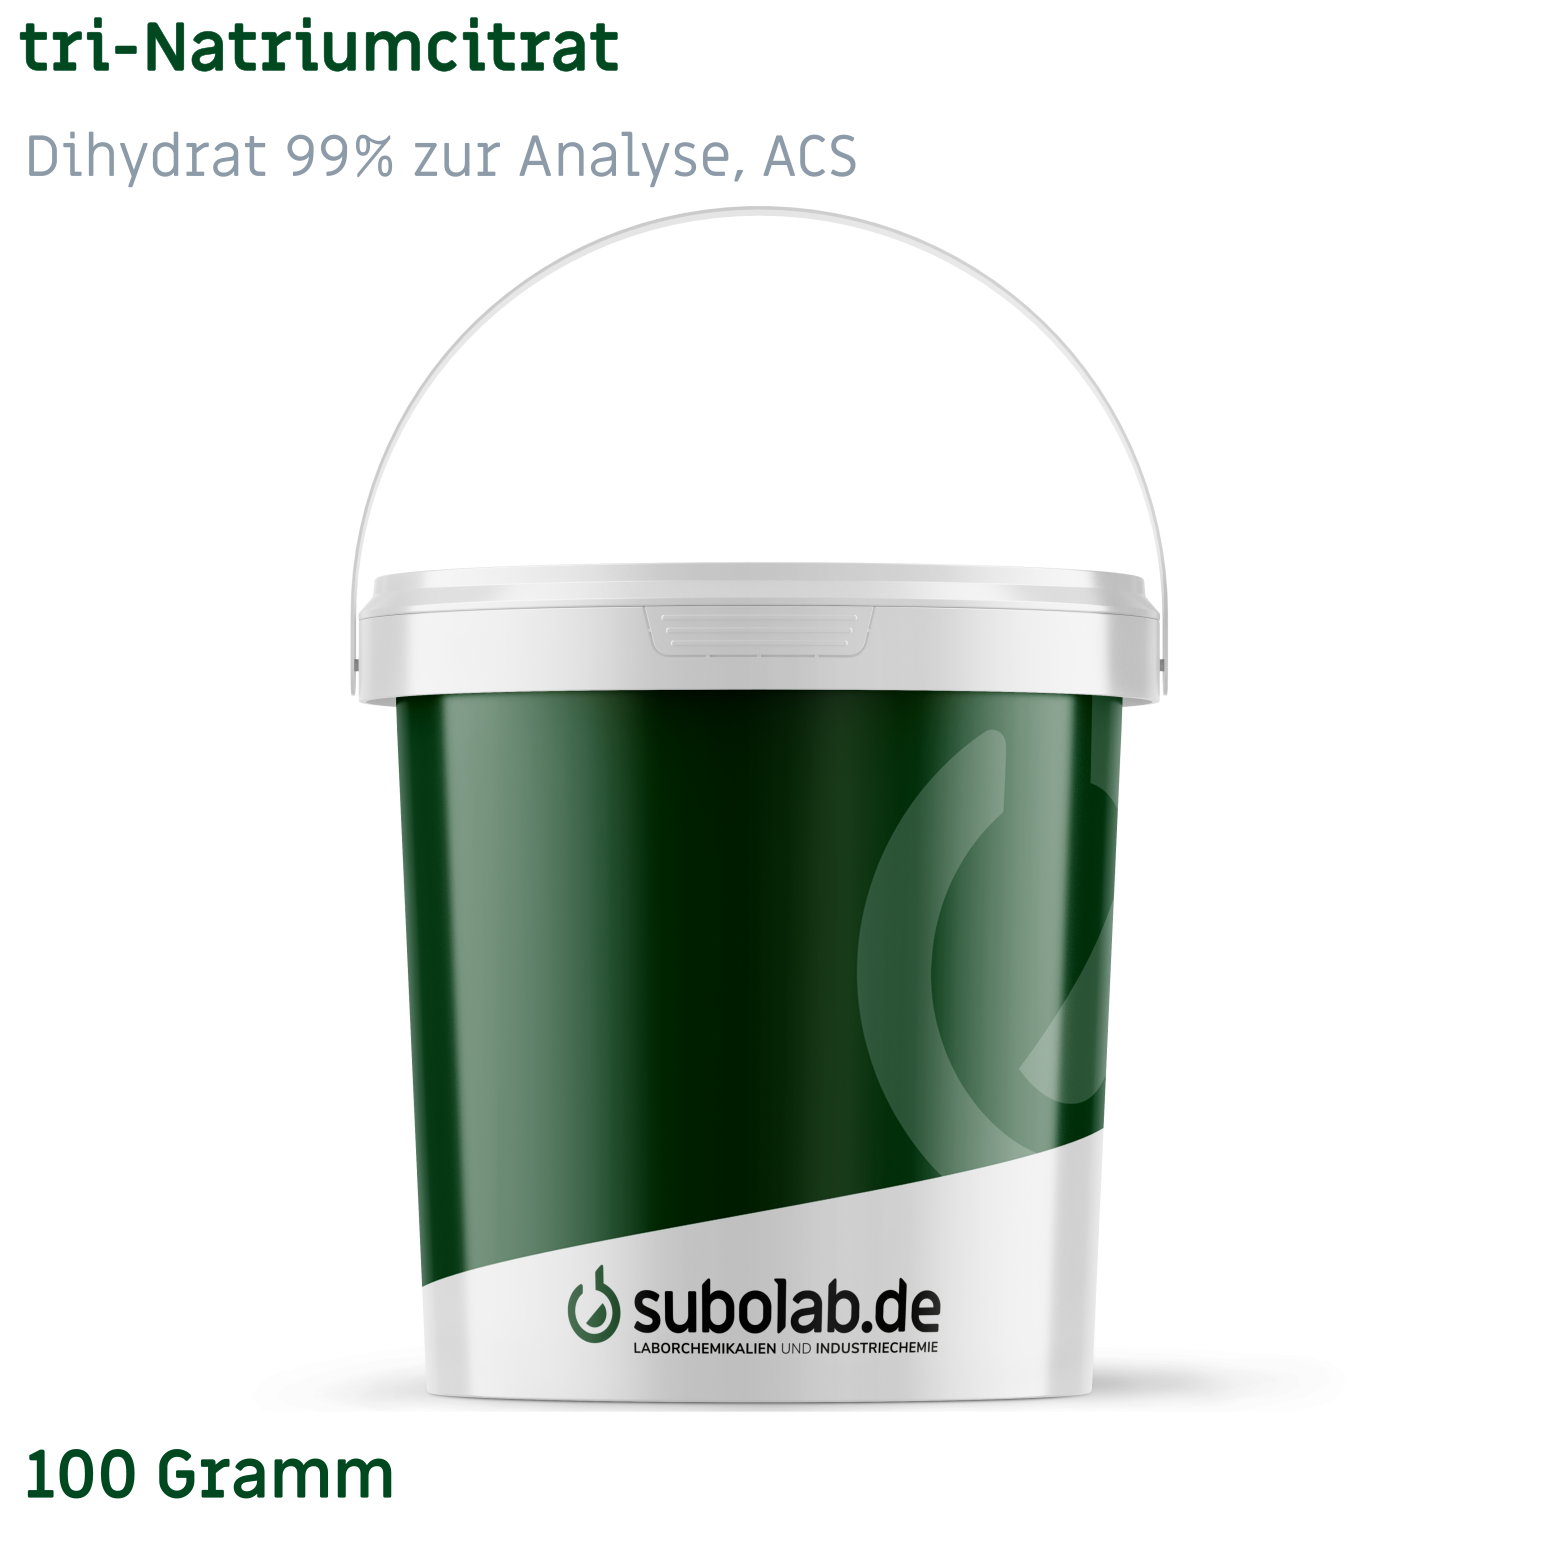 Bild von tri-Natriumcitrat - Dihydrat 99% zur Analyse, ACS (100 Gramm)